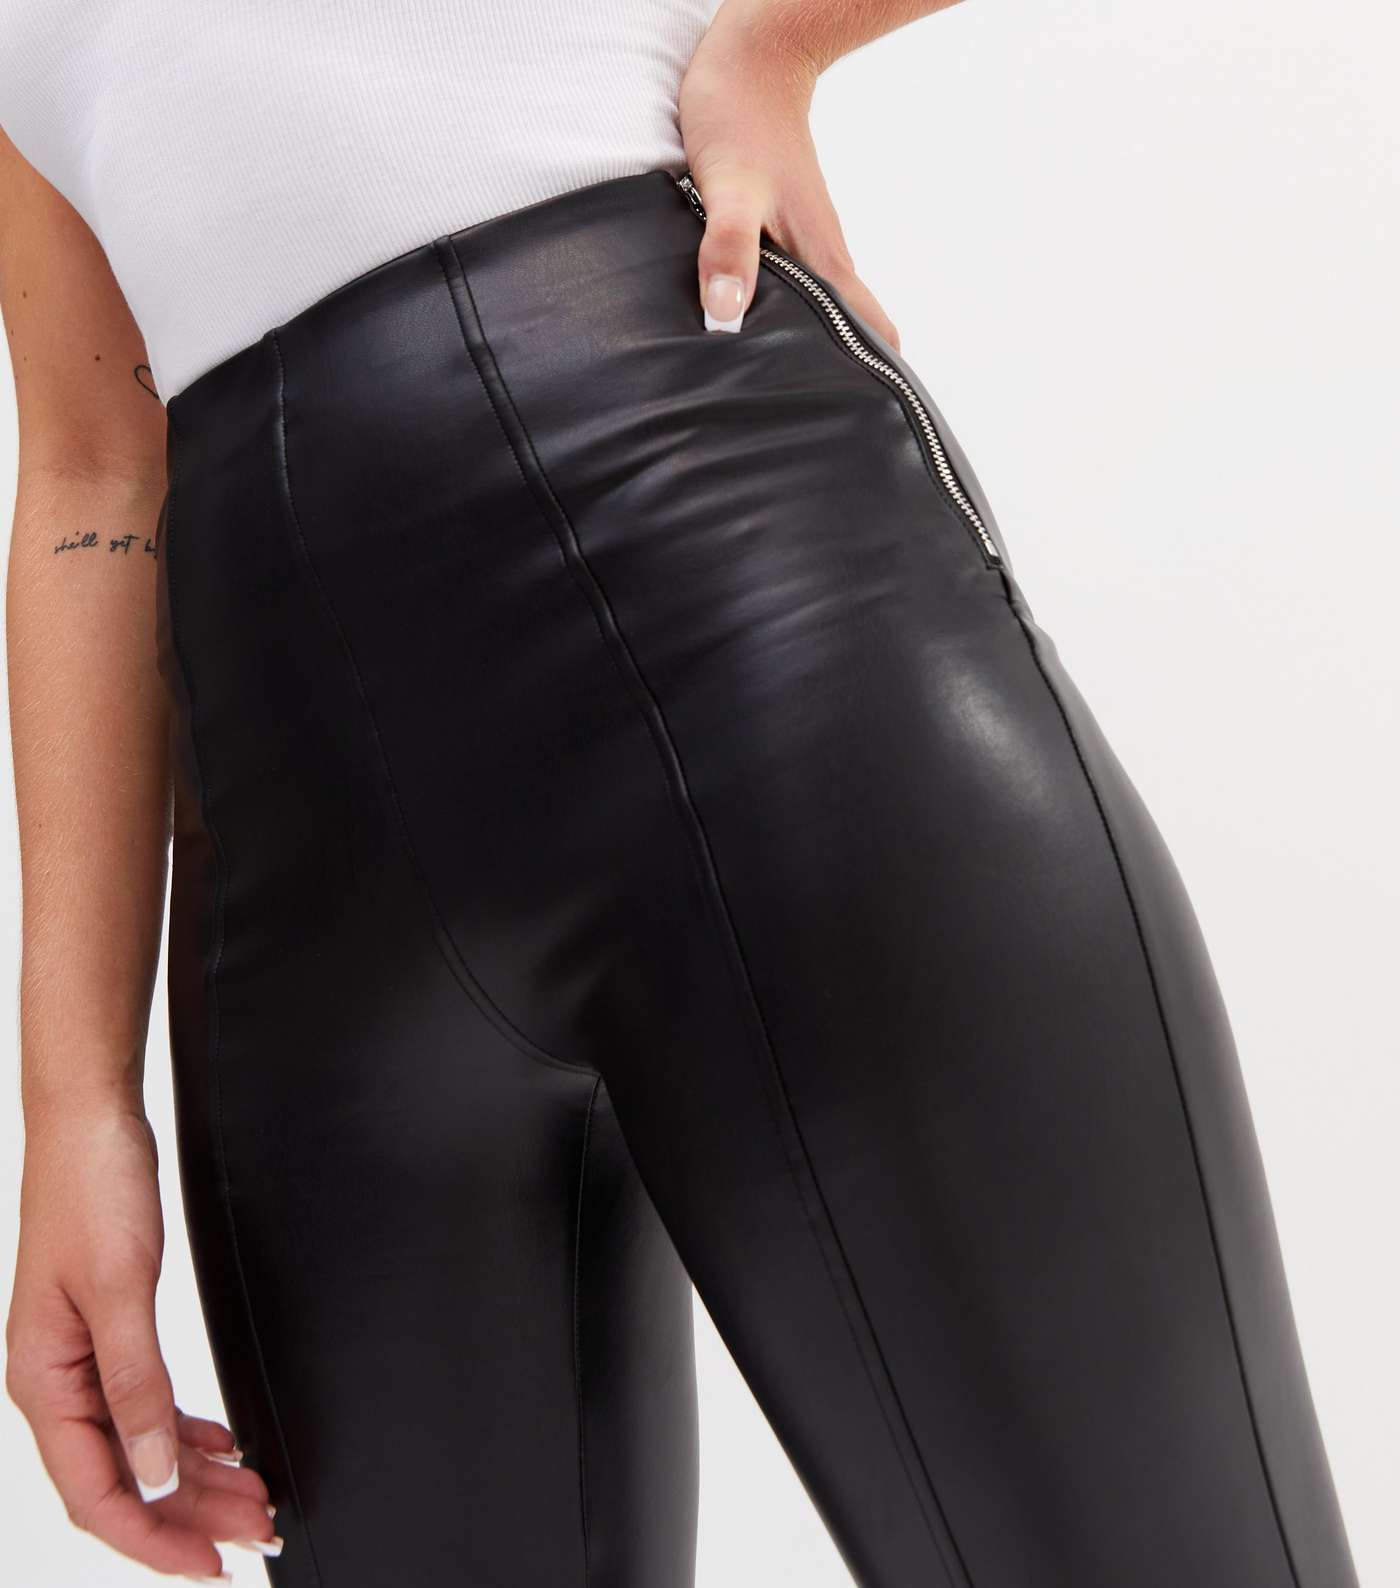 Tall Black Leather-Look High Waist Leggings Image 3